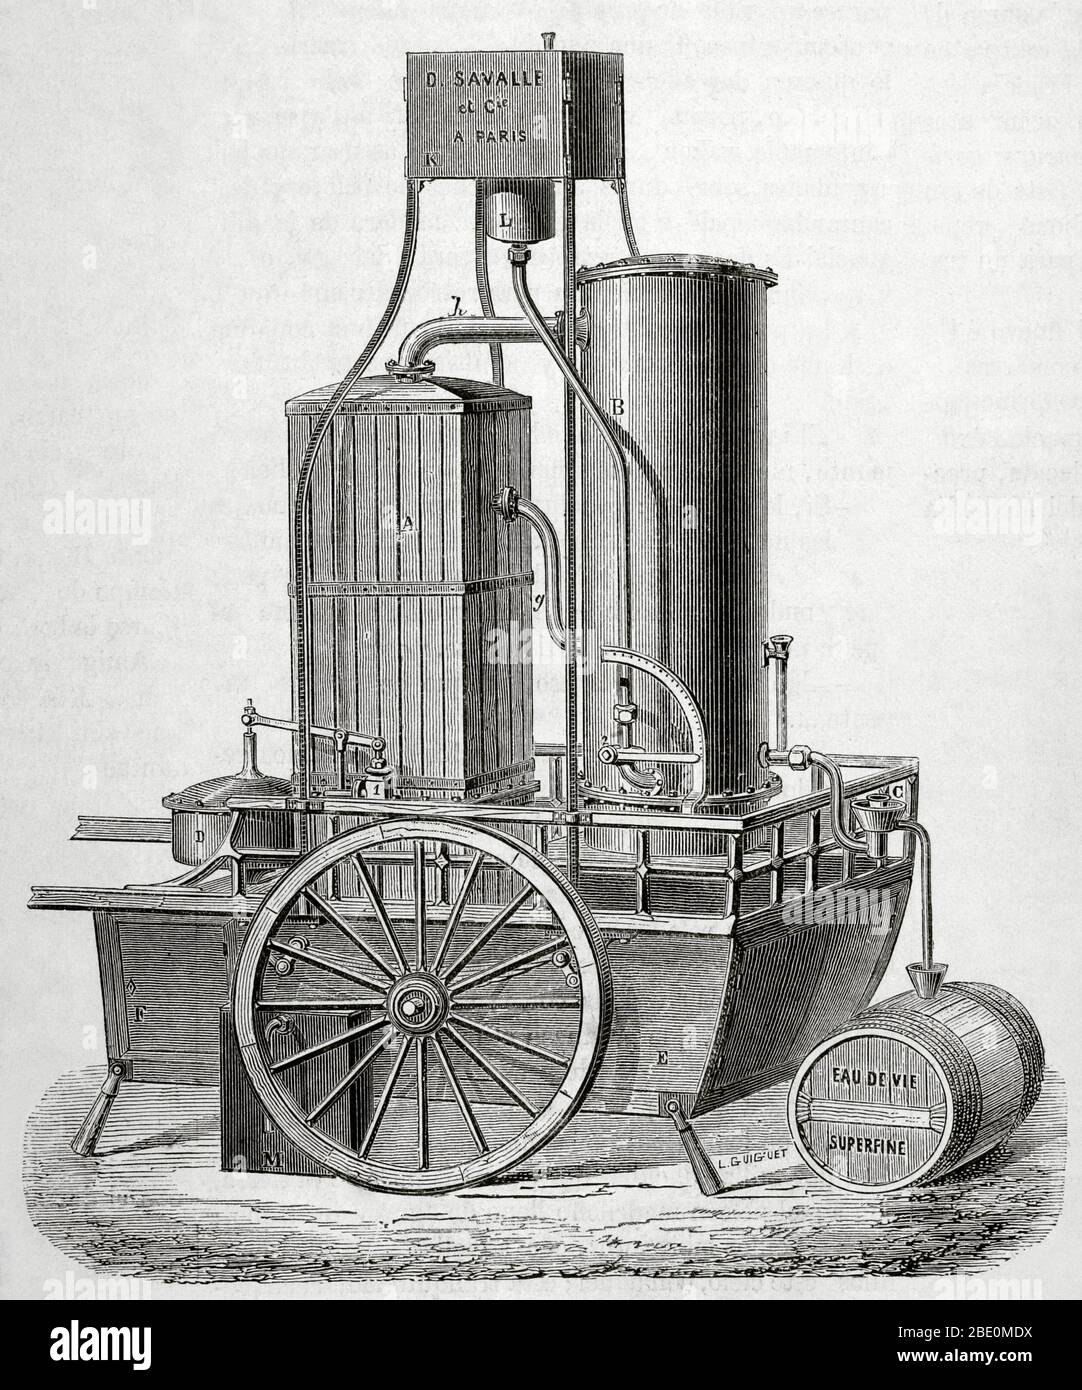 Mobil. Antriebsmotor für die Destillation von Weinen, gebaut von M. Savalle. Stockfoto